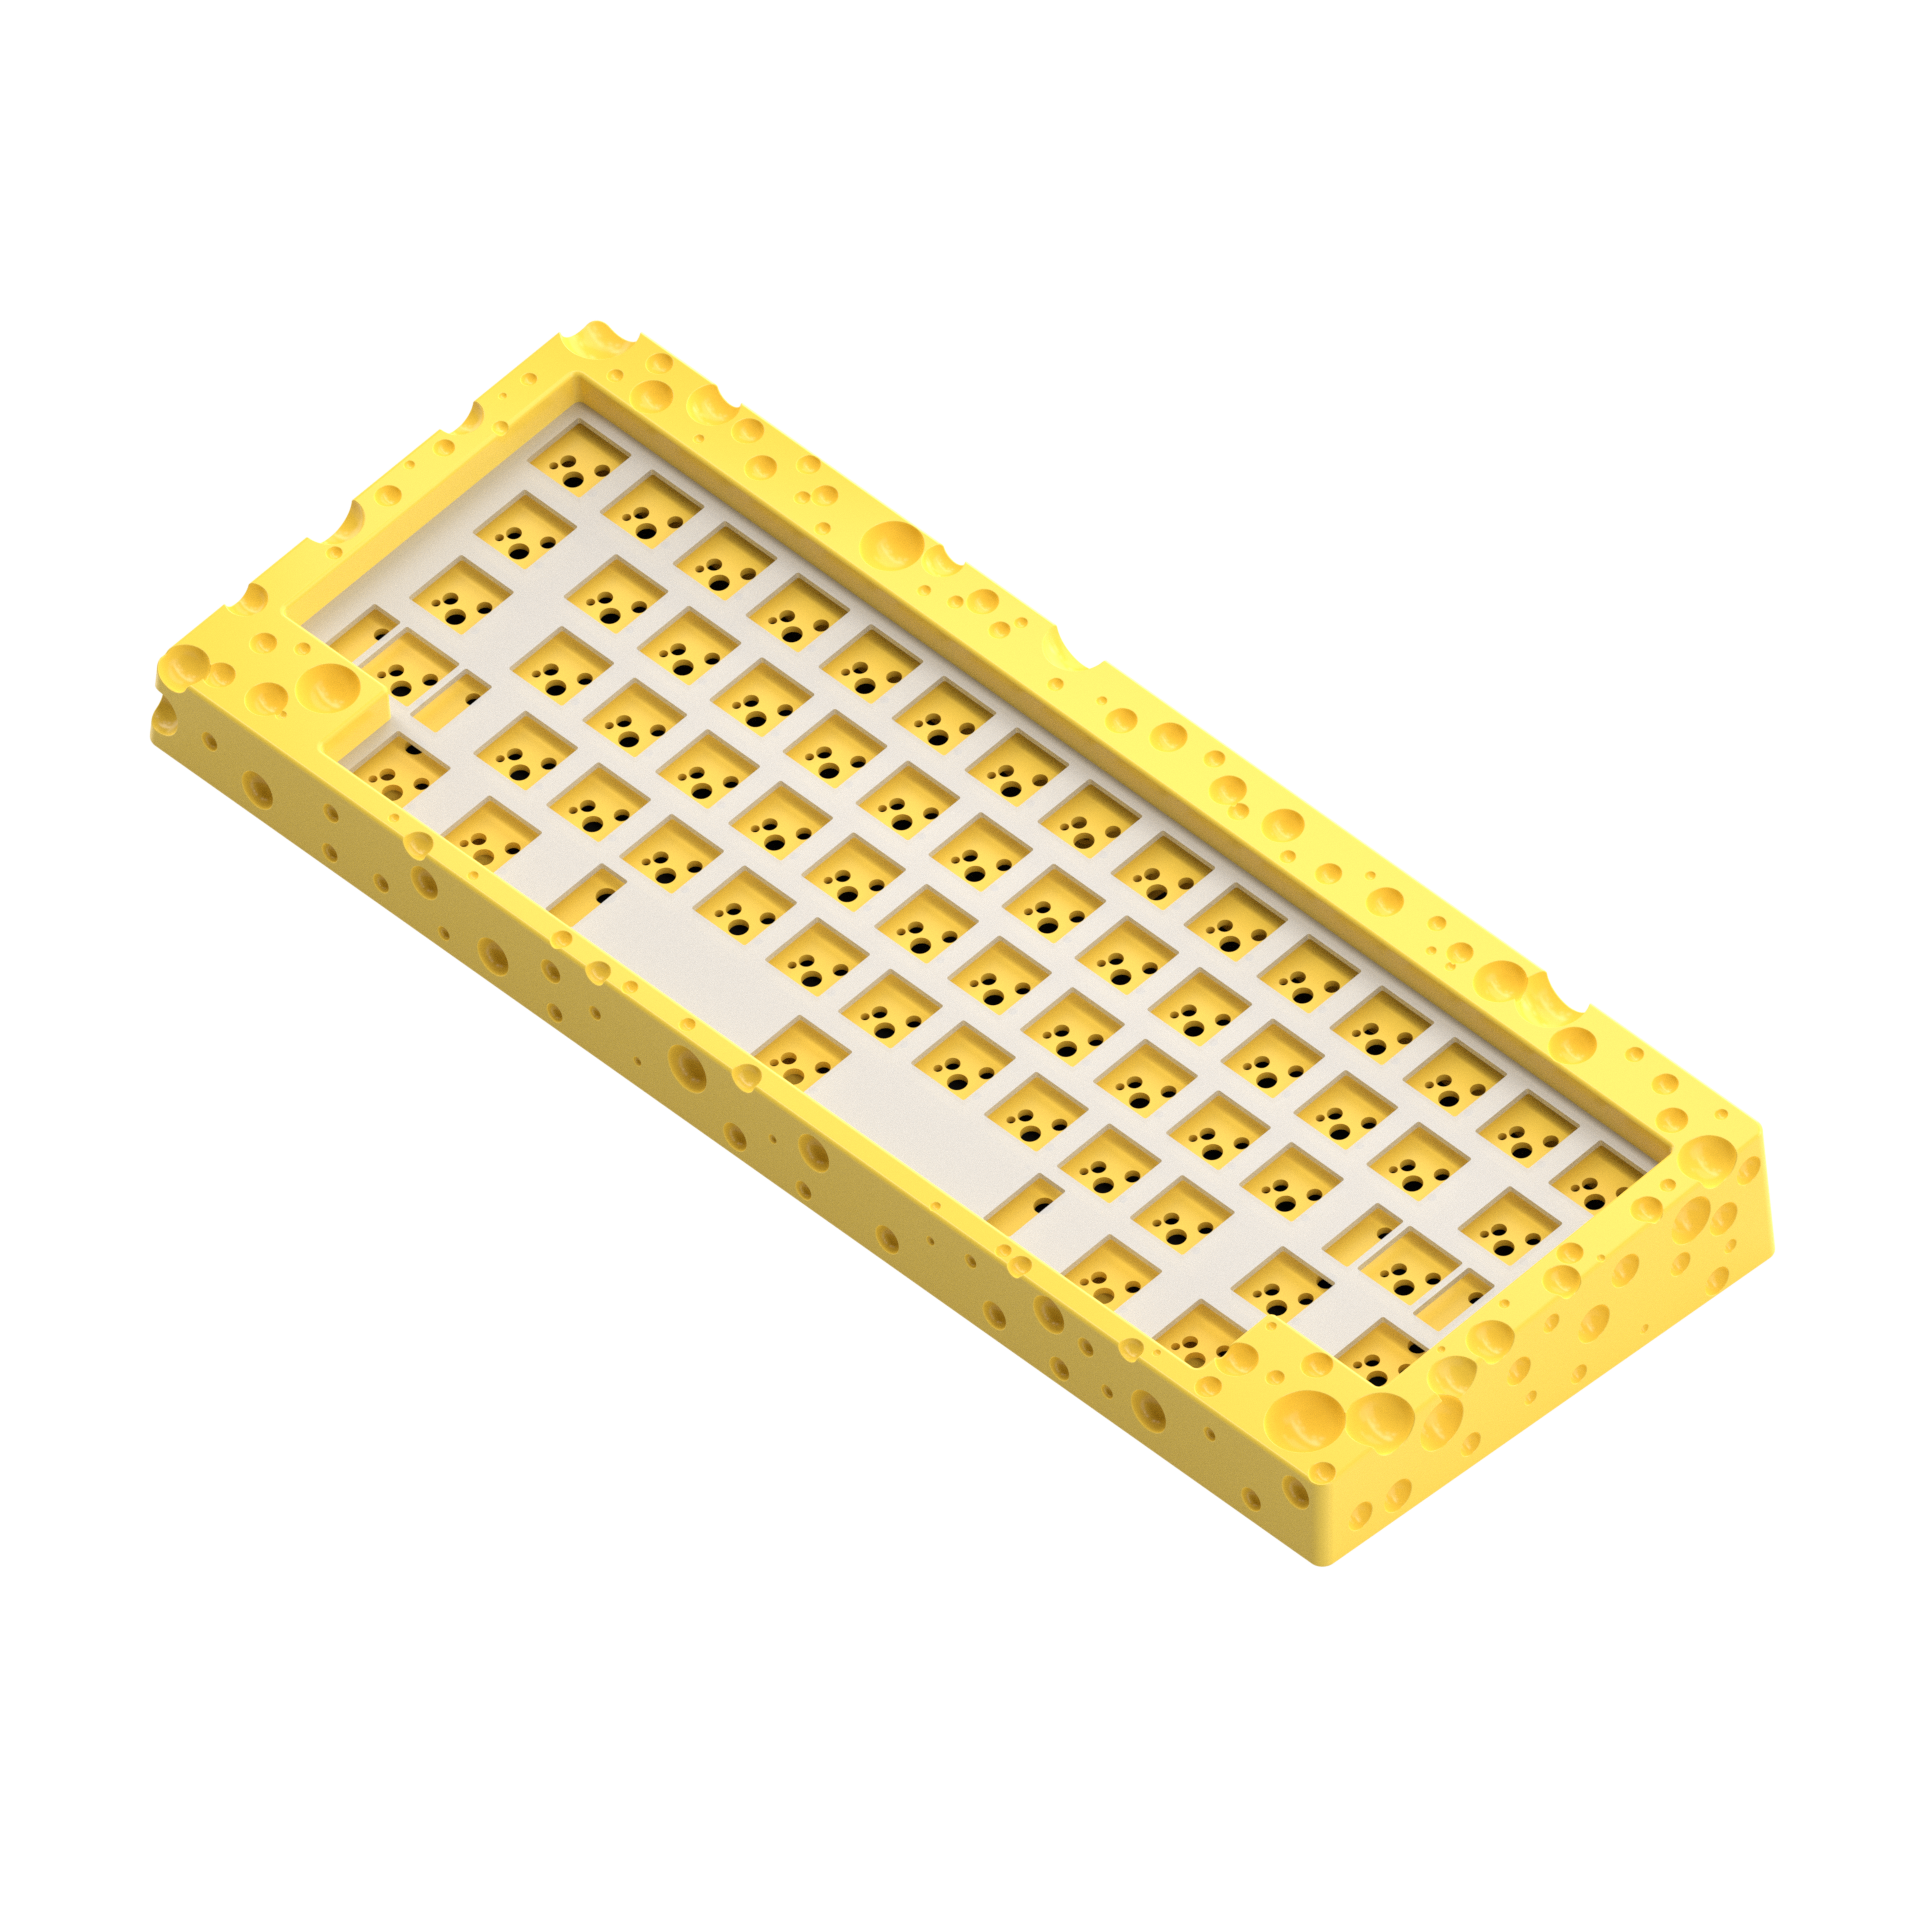 [Group Buy] SWISS aka. the Cheeseboard Custom Mechanical Keyboard Kit